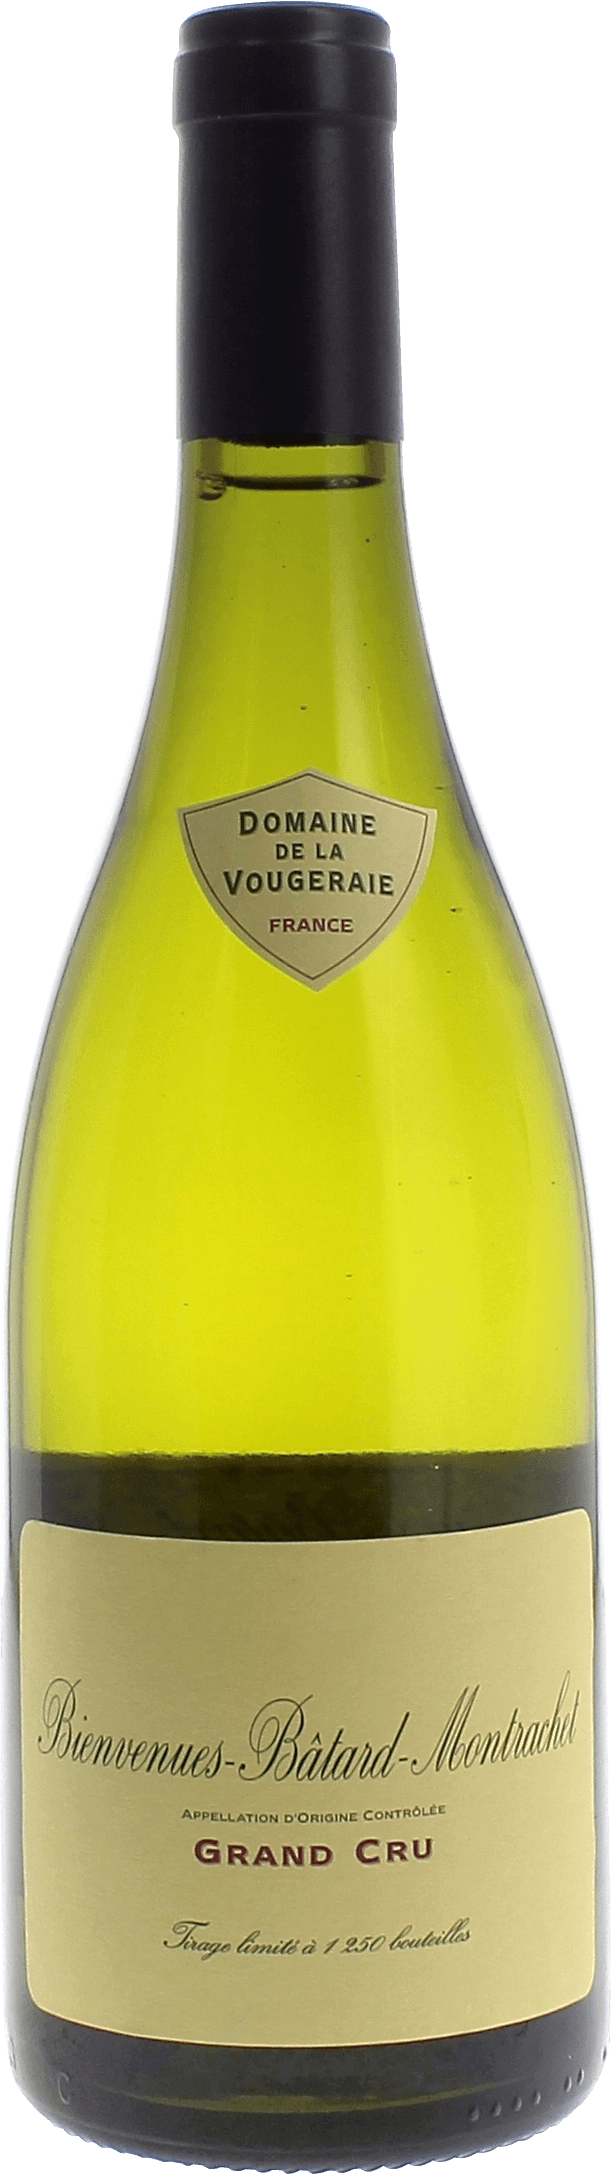 Bienvenues batard montrachet grand cru 2018 Domaine VOUGERAIE, Bourgogne blanc